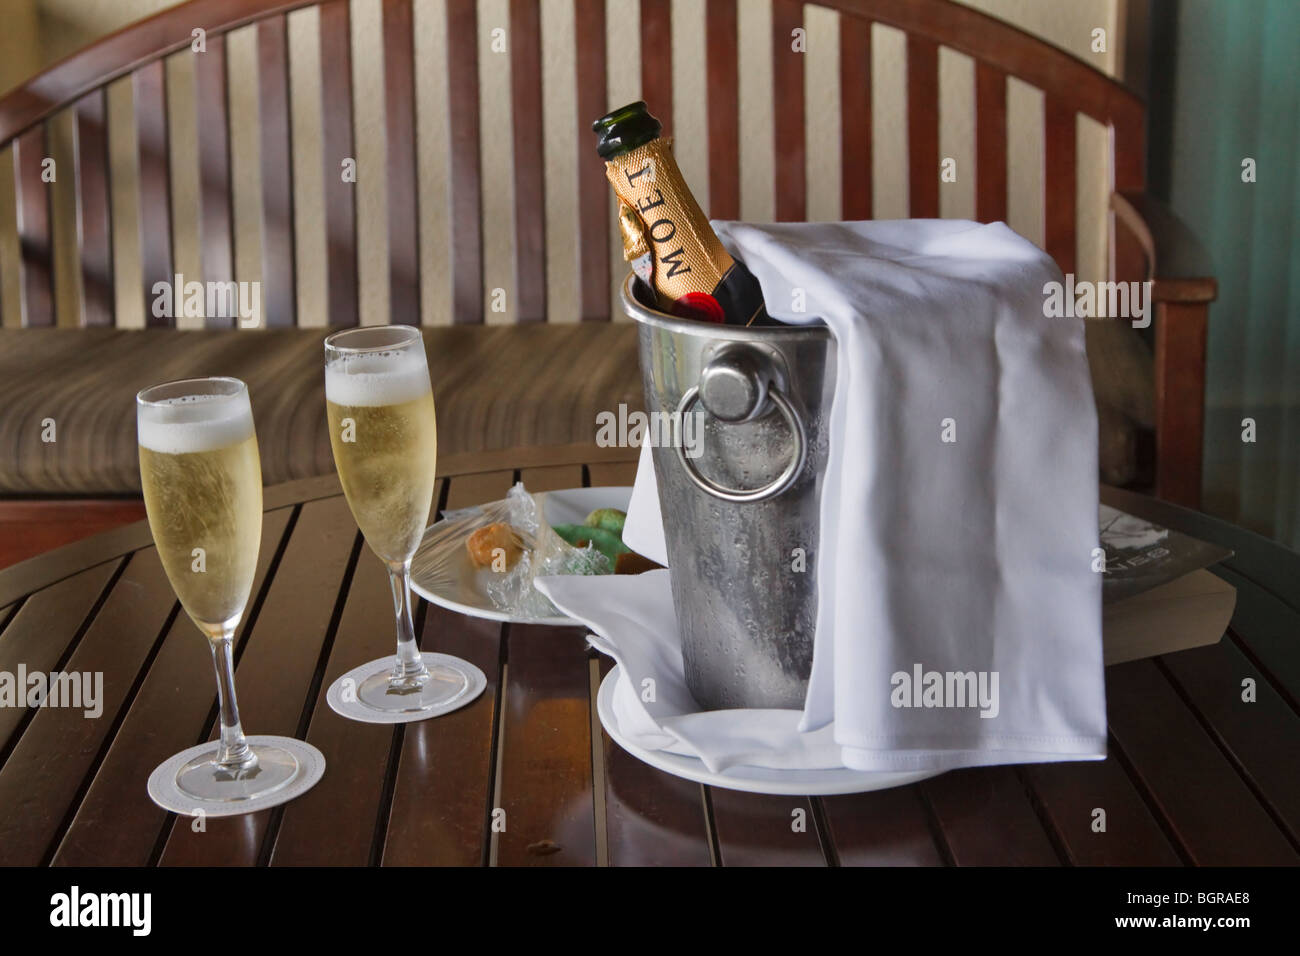 Avec un seau à champagne Moët et Chandon et deux verres remplis Photo Stock  - Alamy